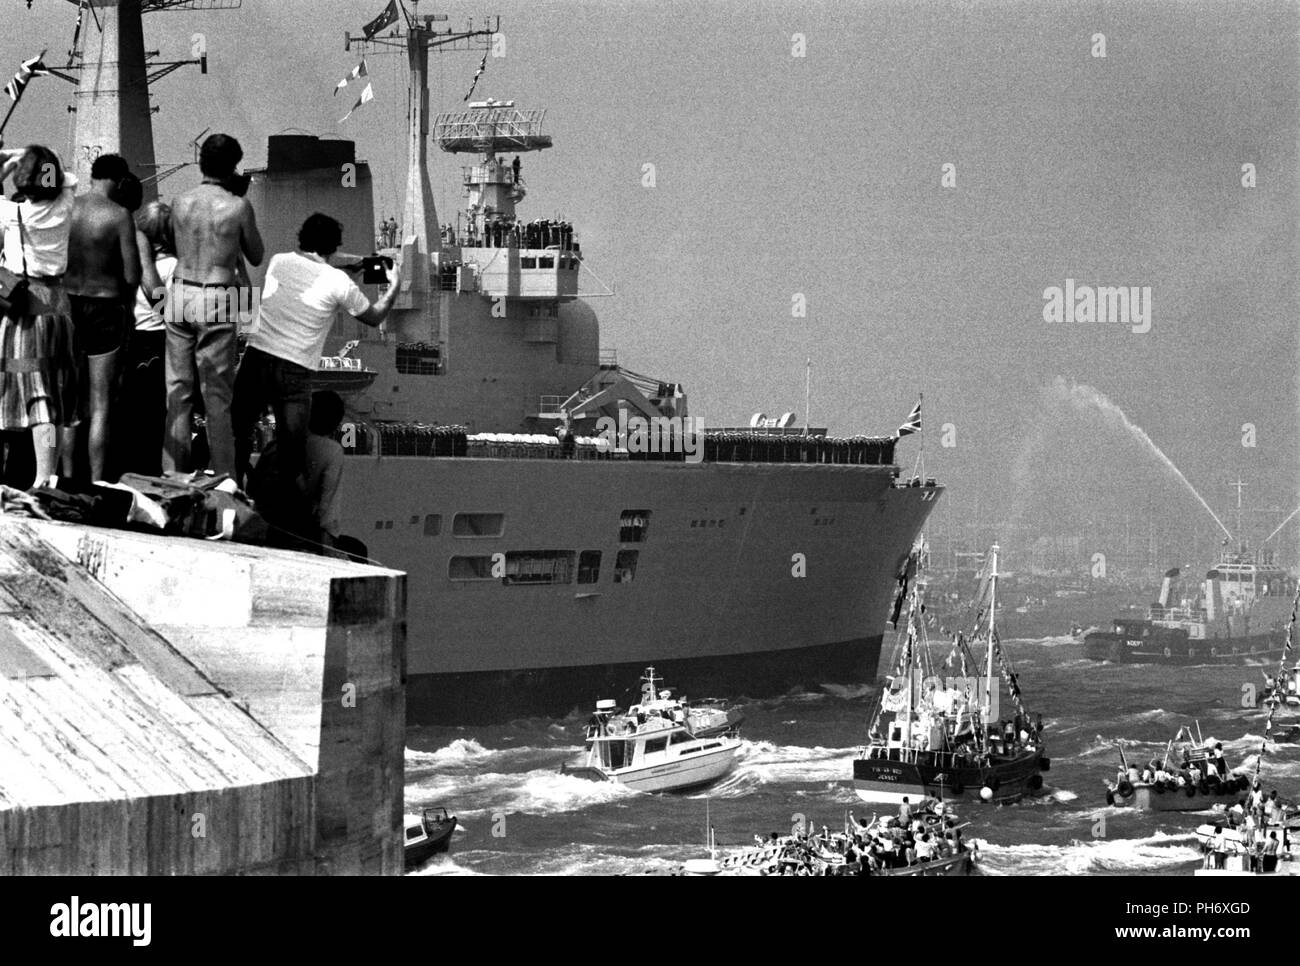 AJAXNETPHOTO. 17TH SEP, 1982. PORTSMOUTH,Inghilterra - invincibile - restituisce il vettore HMS INVINCIBLE tornando a Portsmouth accompagnato da una flottiglia di ben wishers alla fine del suo sud Atlantico dovere durante la campagna delle Falklands. Foto:JONATHAN EASTLAND/AJAX REF:820917 14 Foto Stock